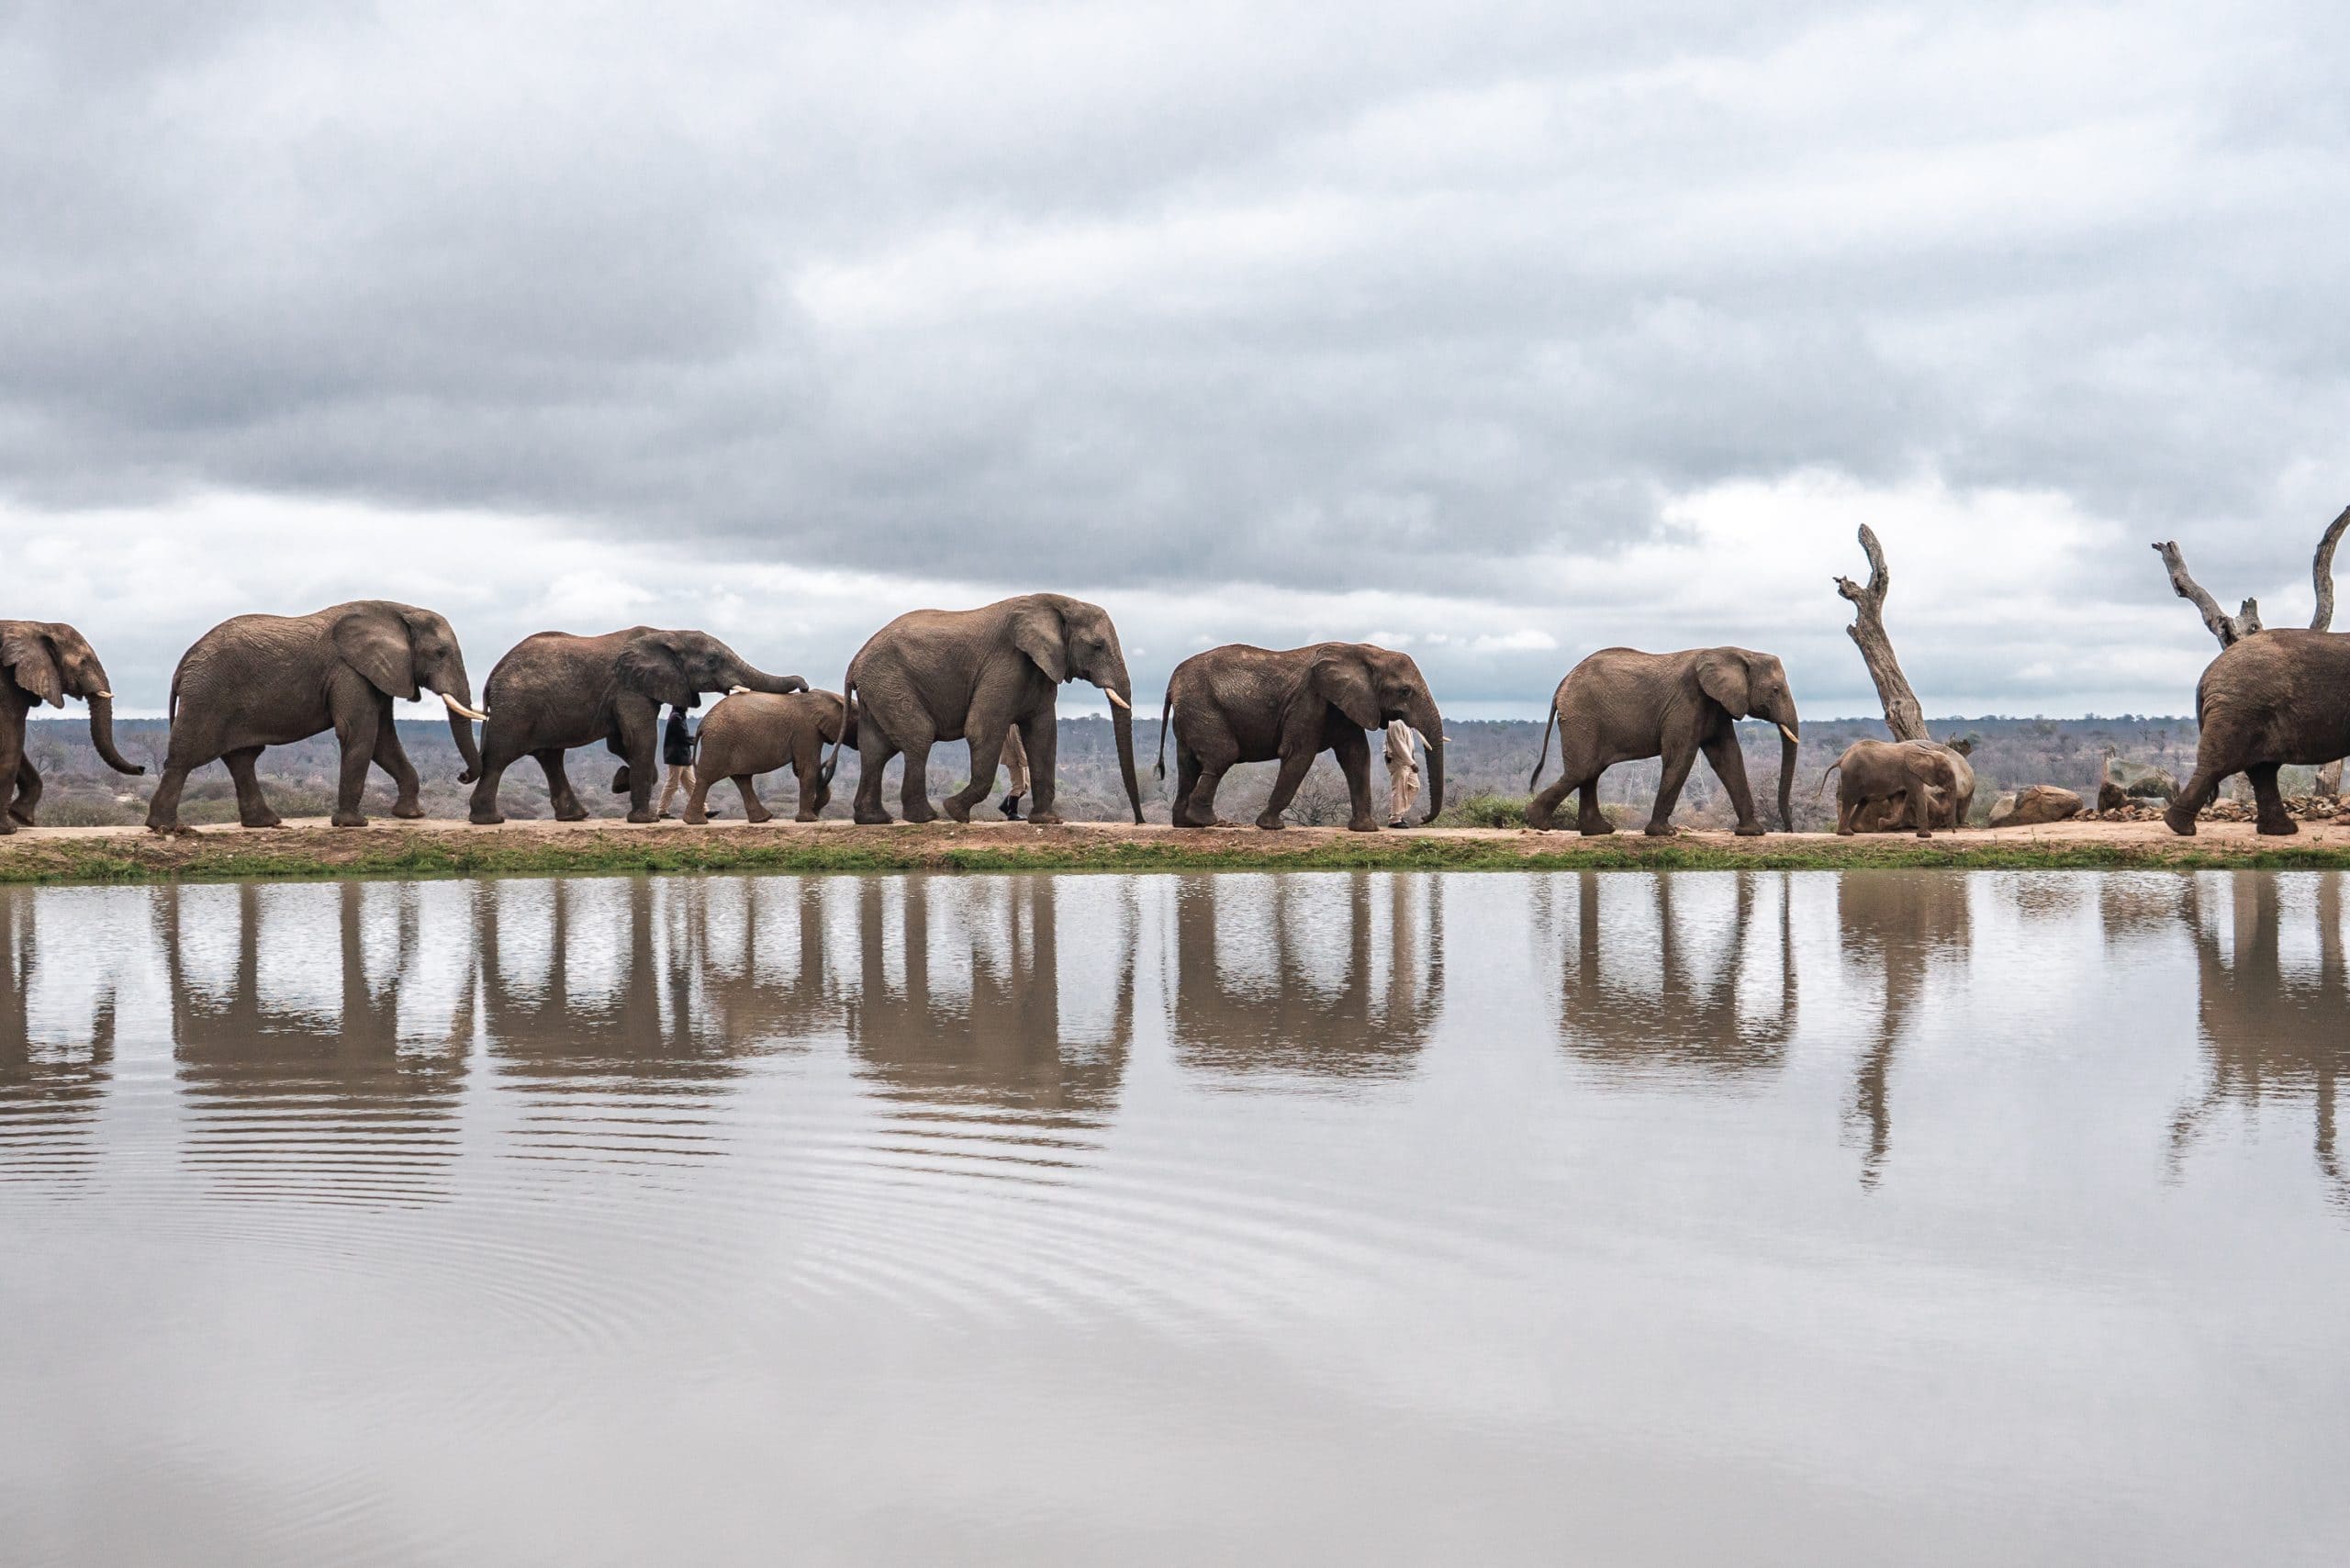 Jabulani Elephants around Dam October 2020 - Mike Eloff